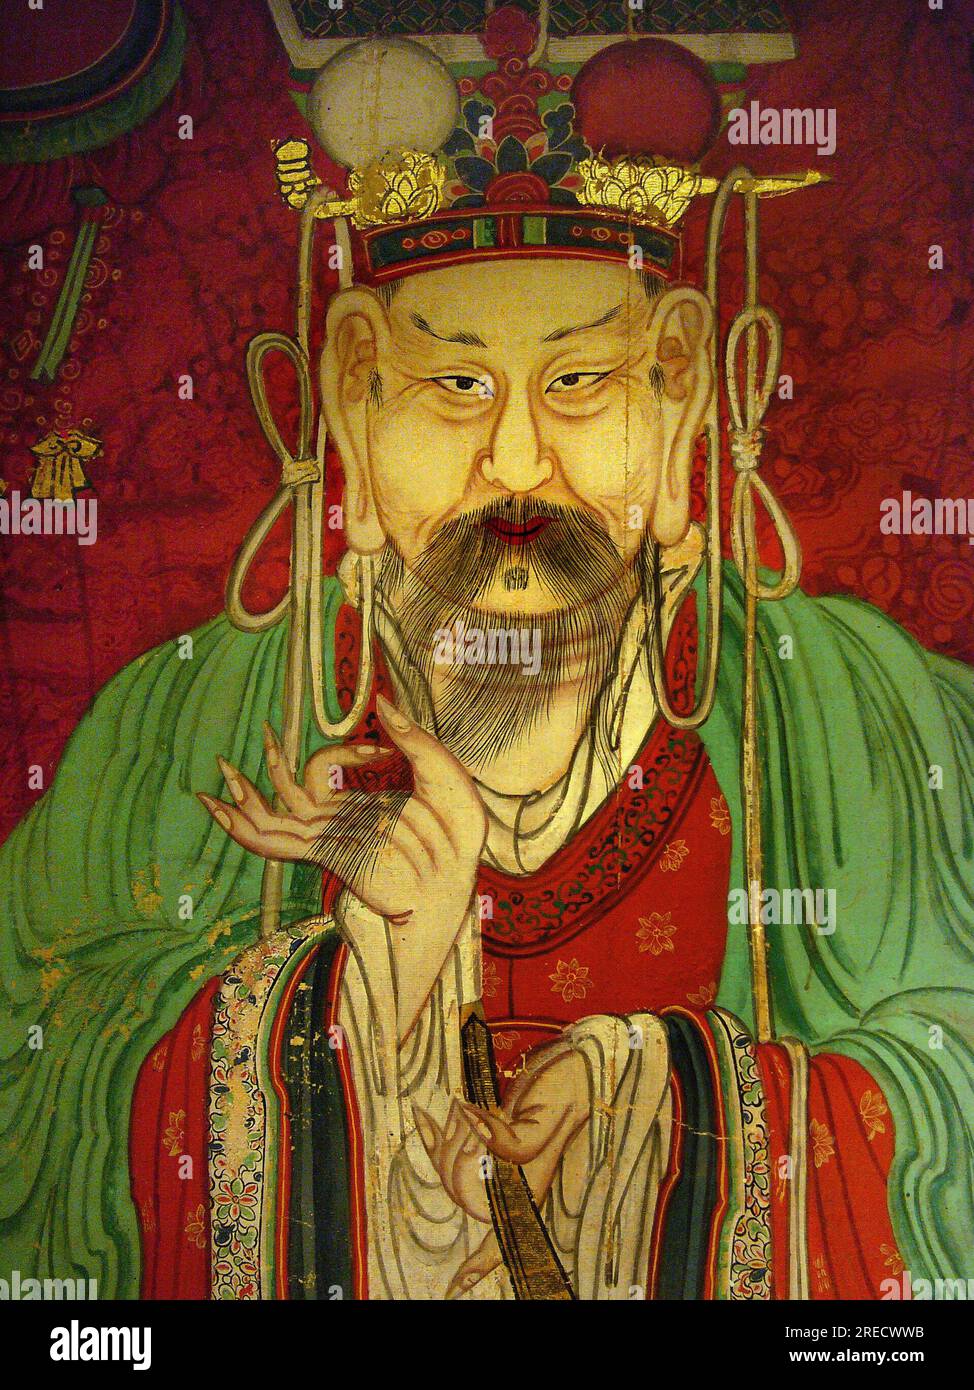 Detail, portrait du Septieme Roi (Sejo, 1417-1458) - peinture sur soie, XIXe siecle sous la periode Joseon, Taegosa, Coree. Photographie, Musee National de Seoul, Republique de Coree Stock Photo